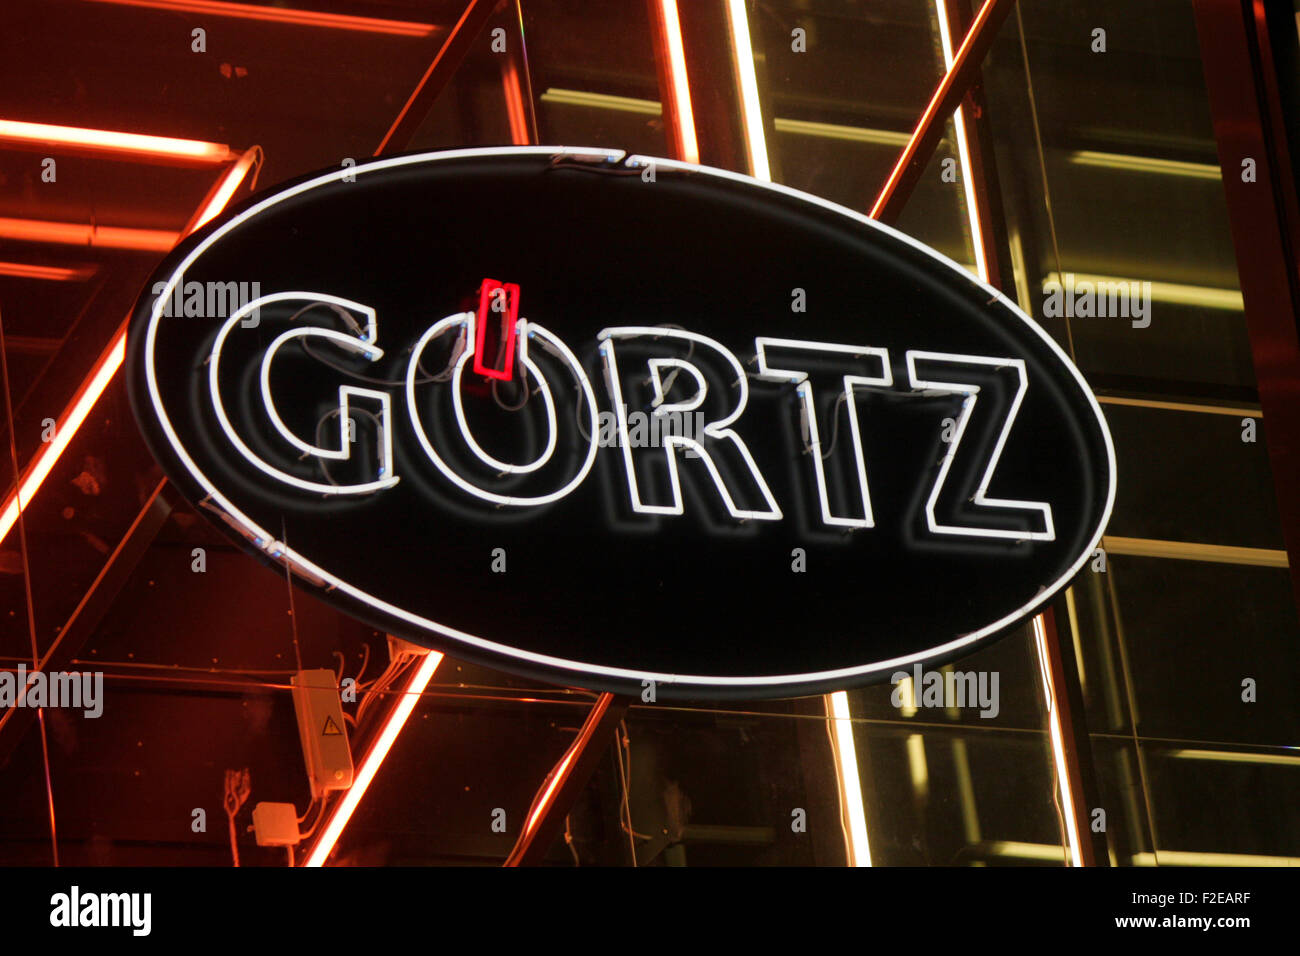 Novembre 2013 - BERLINO: marchi: il logo del tedesco produttore di scarpe "Goertz', Berlino. Foto Stock